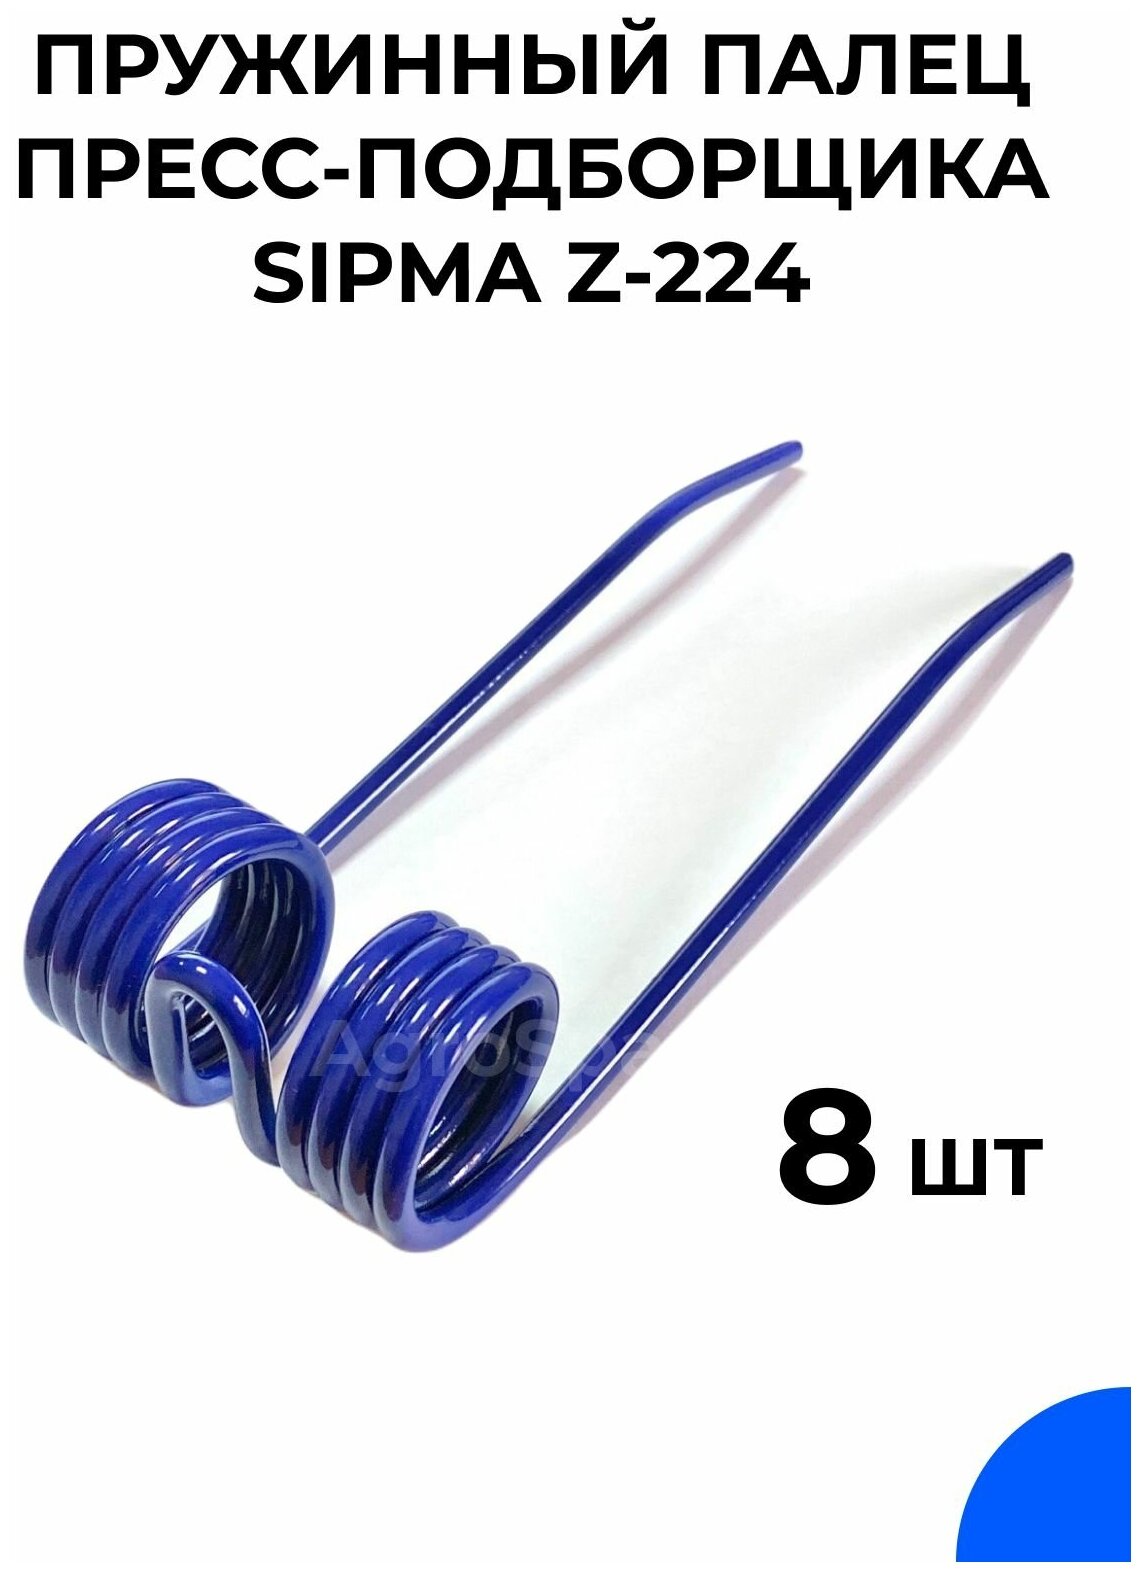 Палец пружинный пресс-подборщика сипма 224 / SIPMA Z-224 / 8 